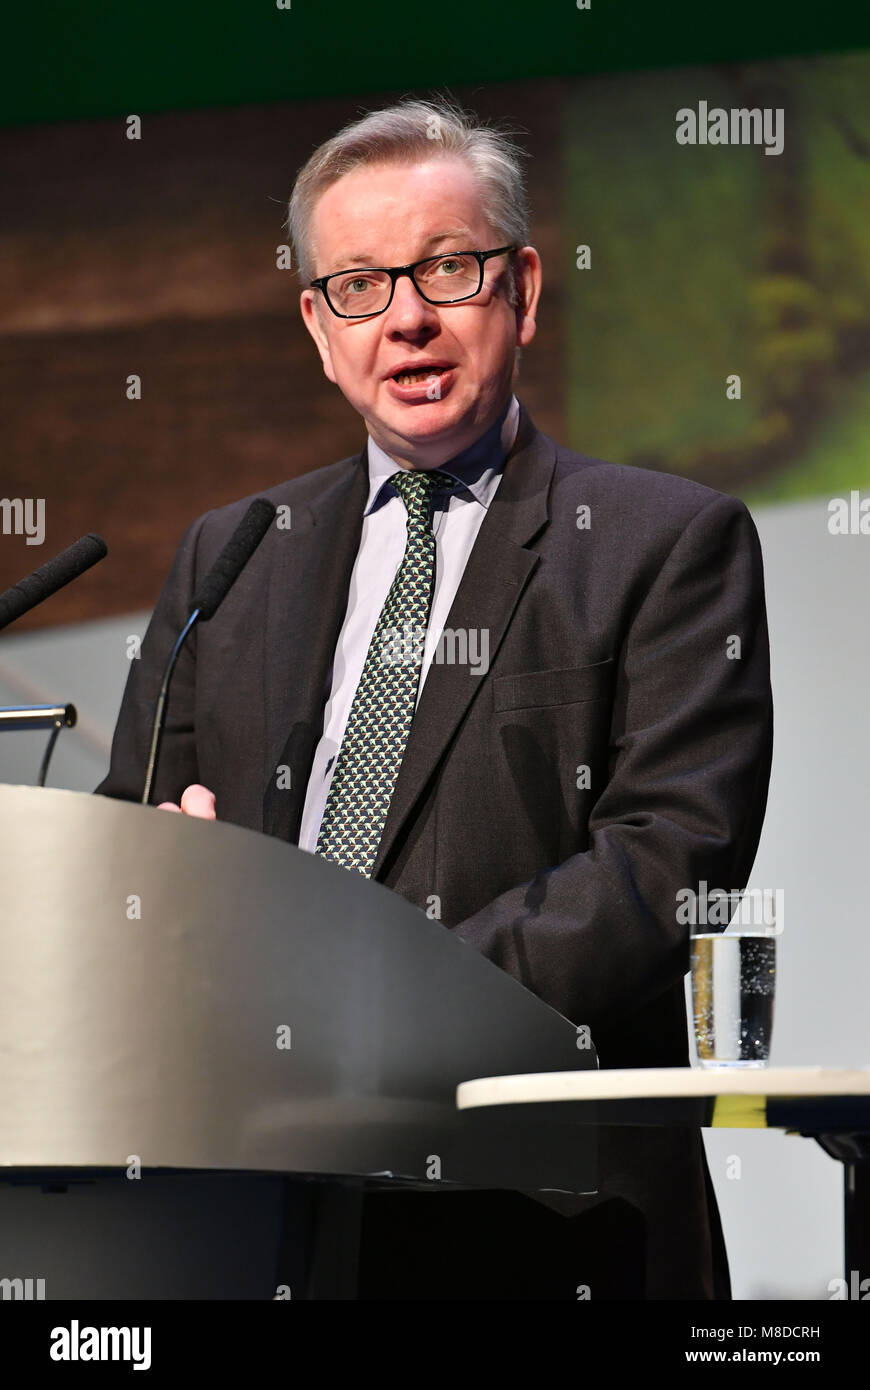 Michael Gove MP il Segretario di Stato per l'ambiente, l'alimentazione e gli affari rurali (Ambiente Segretario) intervenendo alla conferenza NFU 2018. Foto Stock